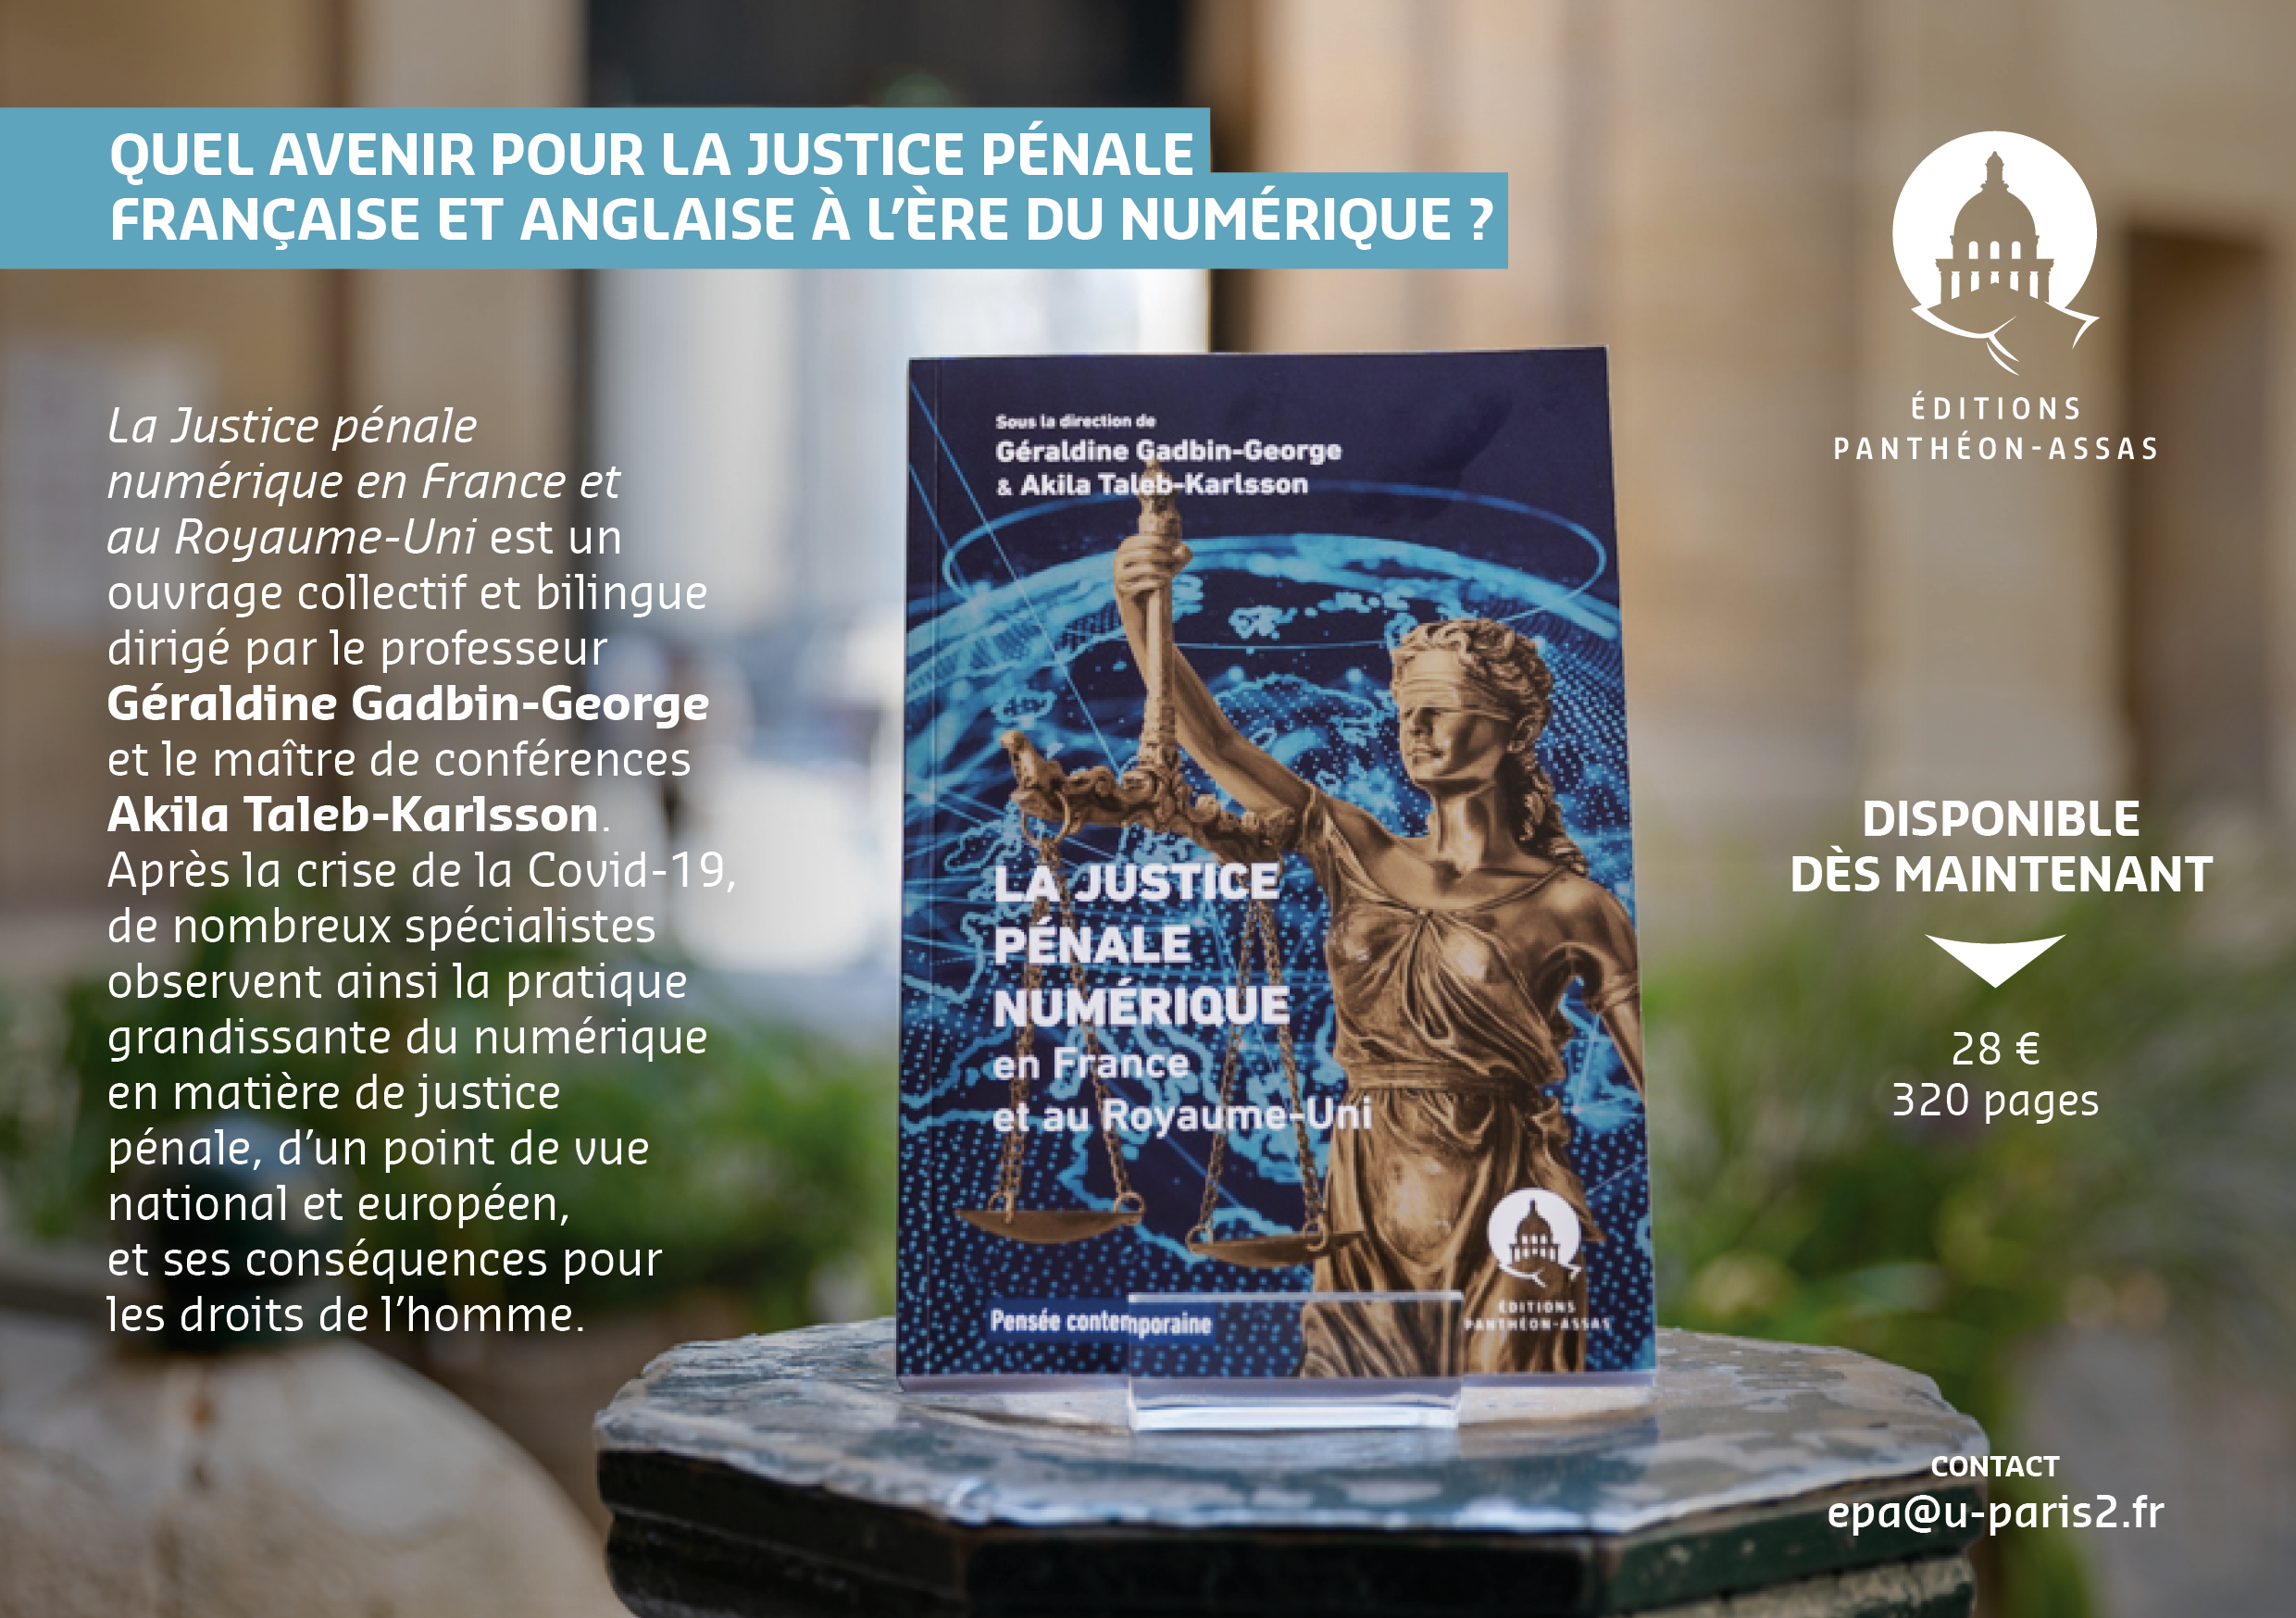 Flyer promotionnel de l'ouvrage La Justice pénale numérique en France et au Royaume-Uni dirigé par Géraldine Gadbin-George et Akila Taleb-Karlsson